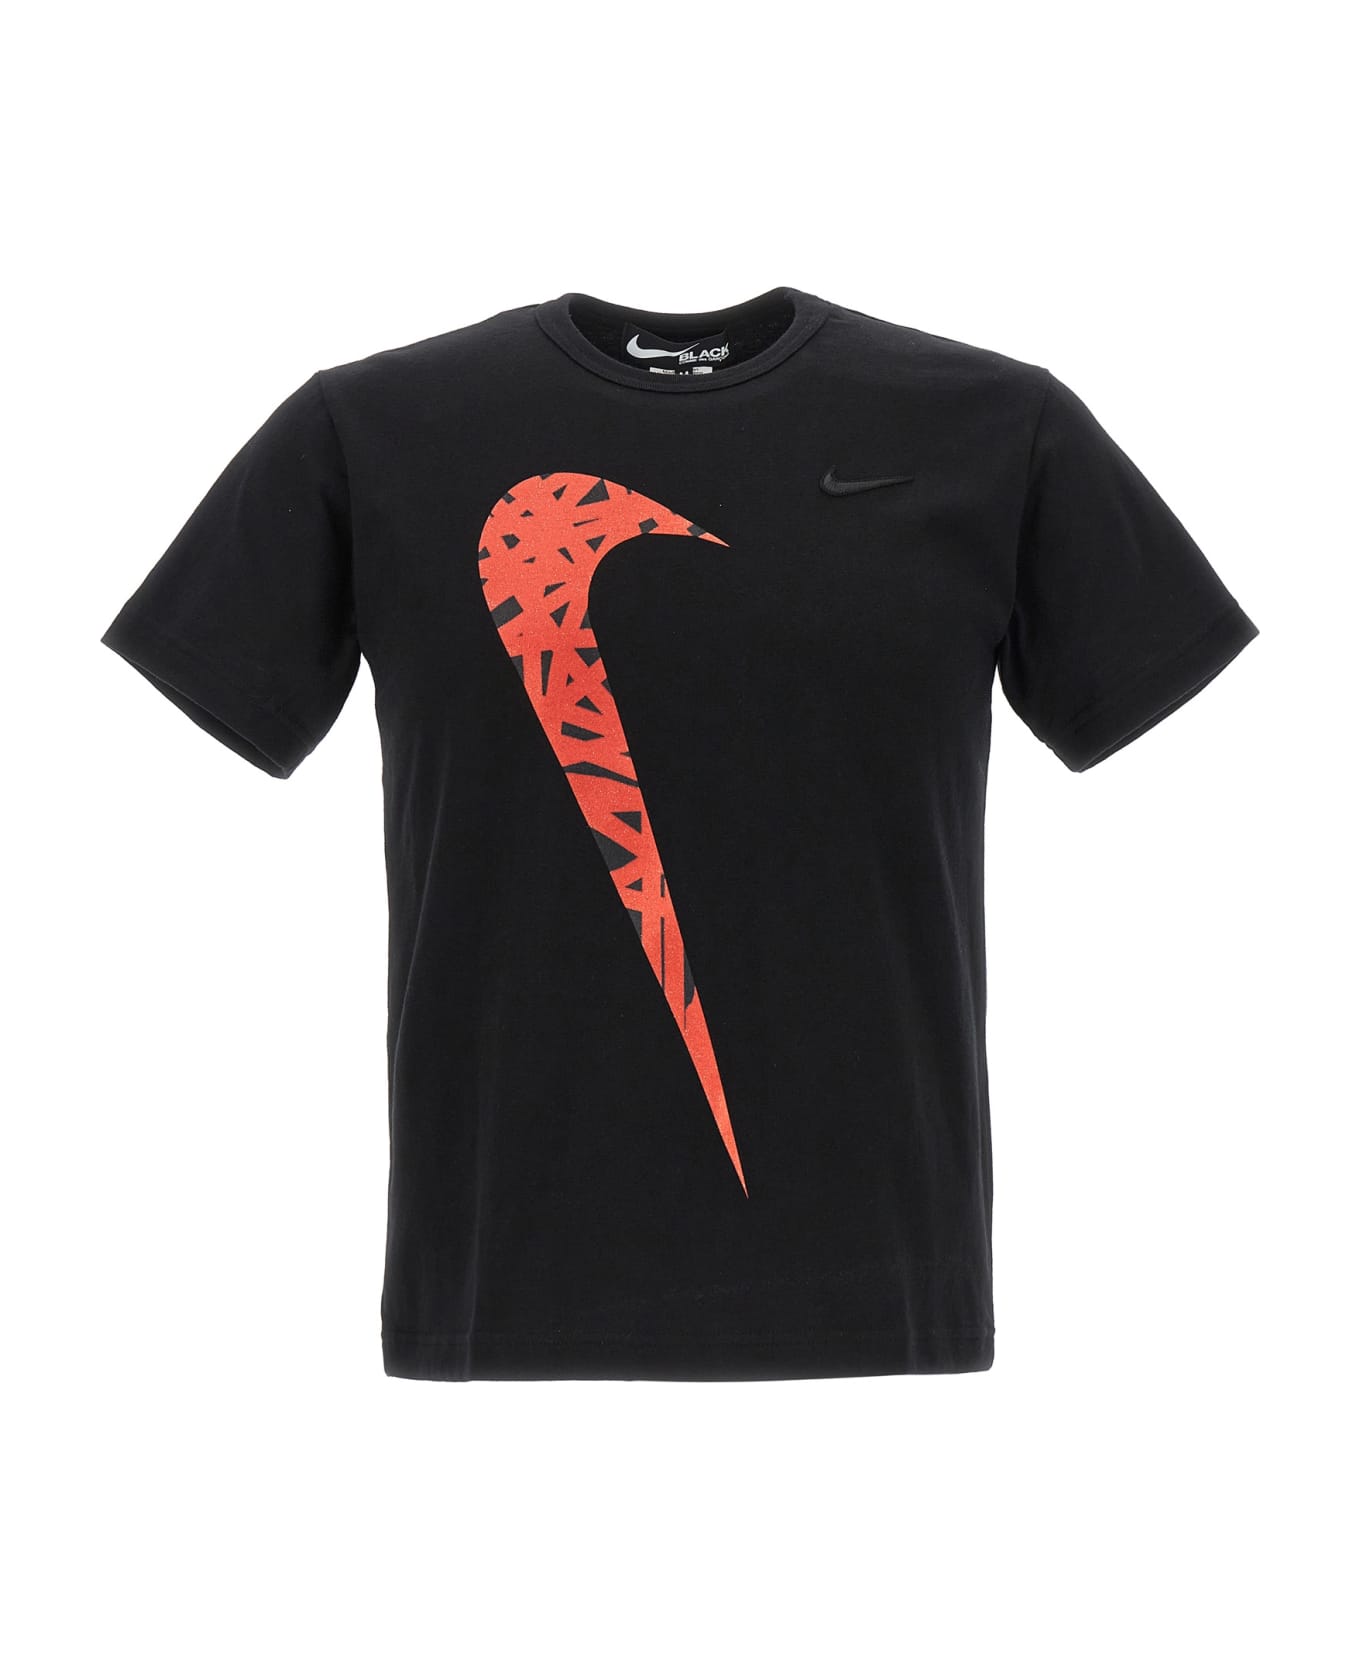 Black Comme des Garçons Printed T-shirt - Black   Tシャツ